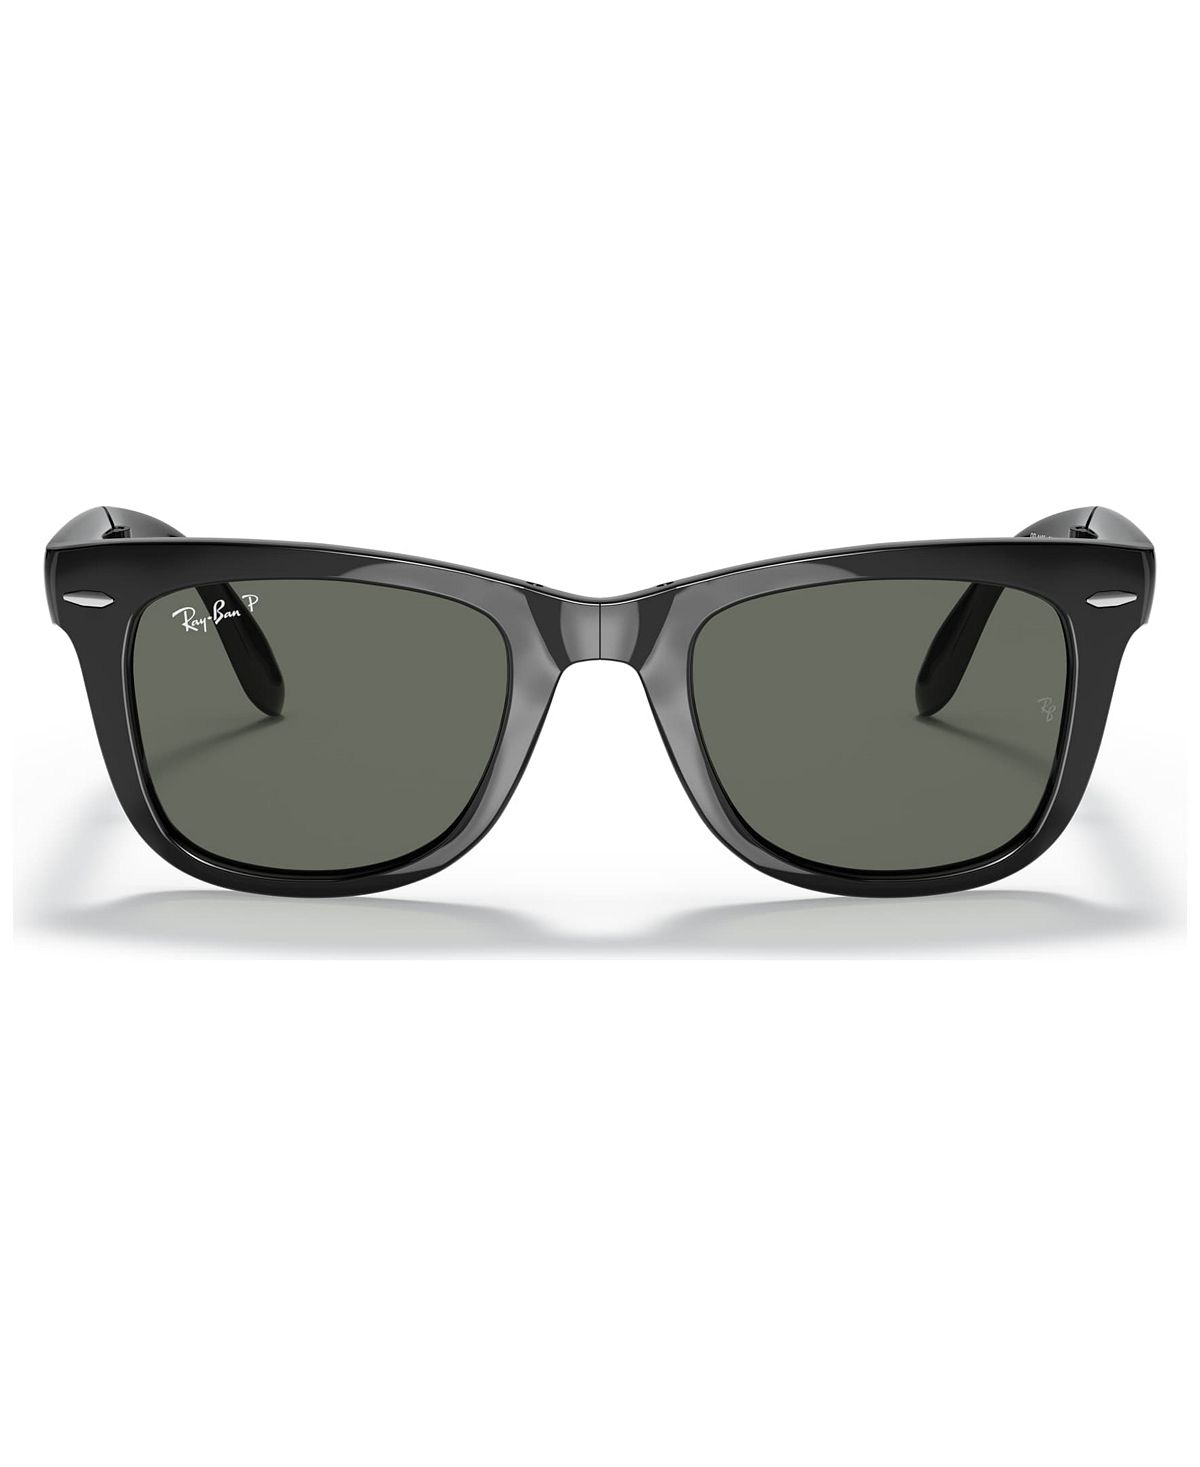 Поляризационные солнцезащитные очки, RB4105 FOLDING WAYFARER Ray-Ban